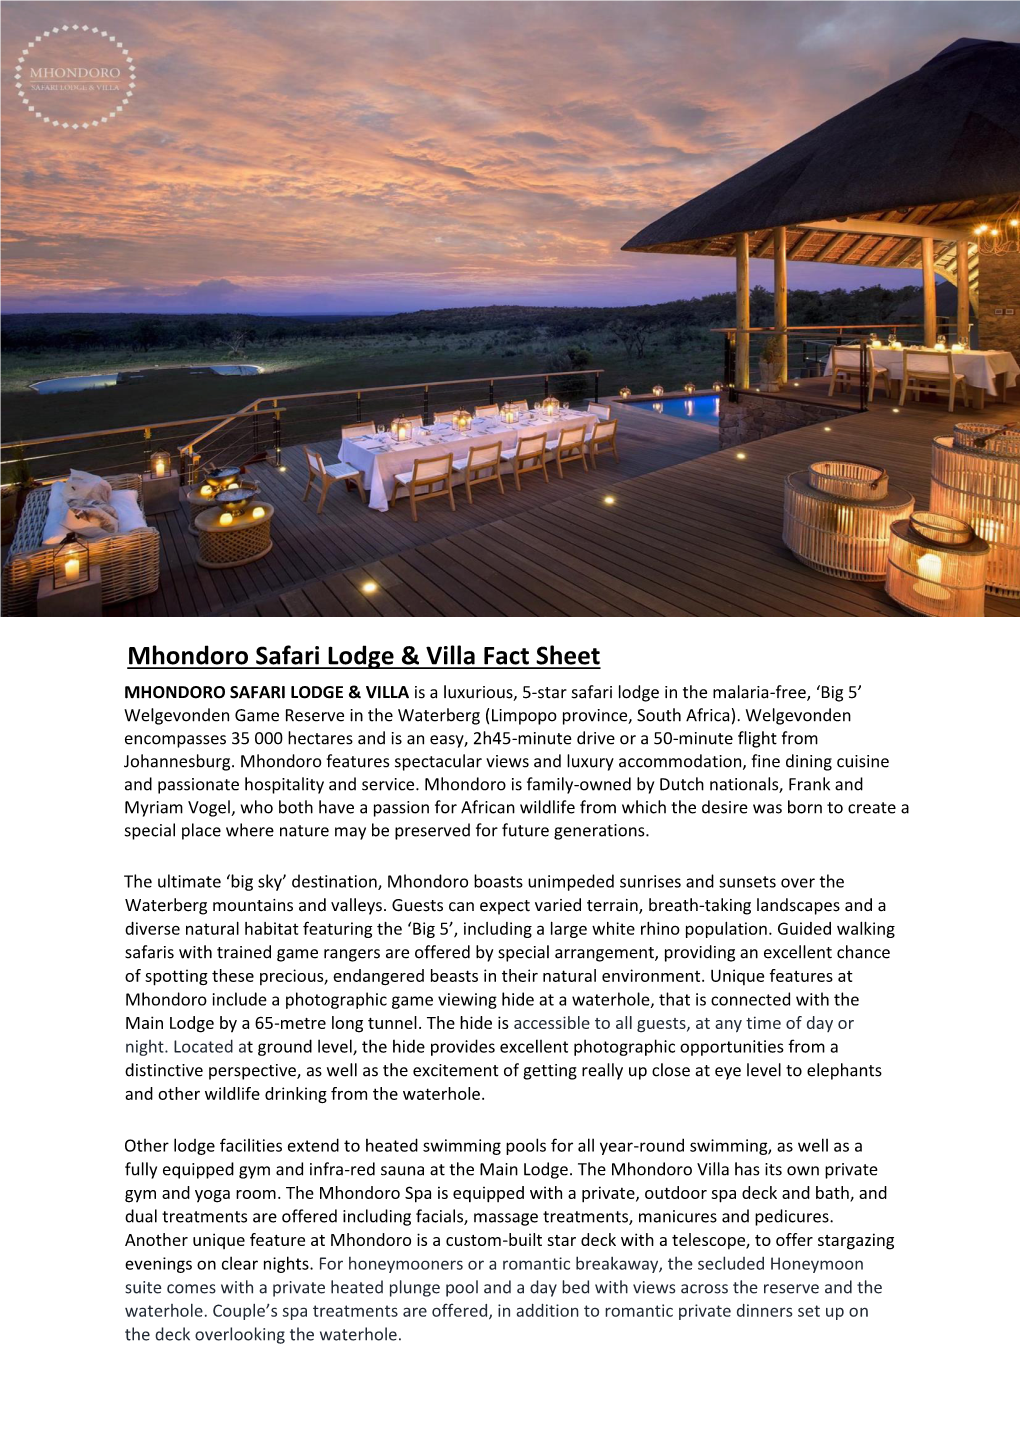 Mhondoro Safari Lodge & Villa Fact Sheet